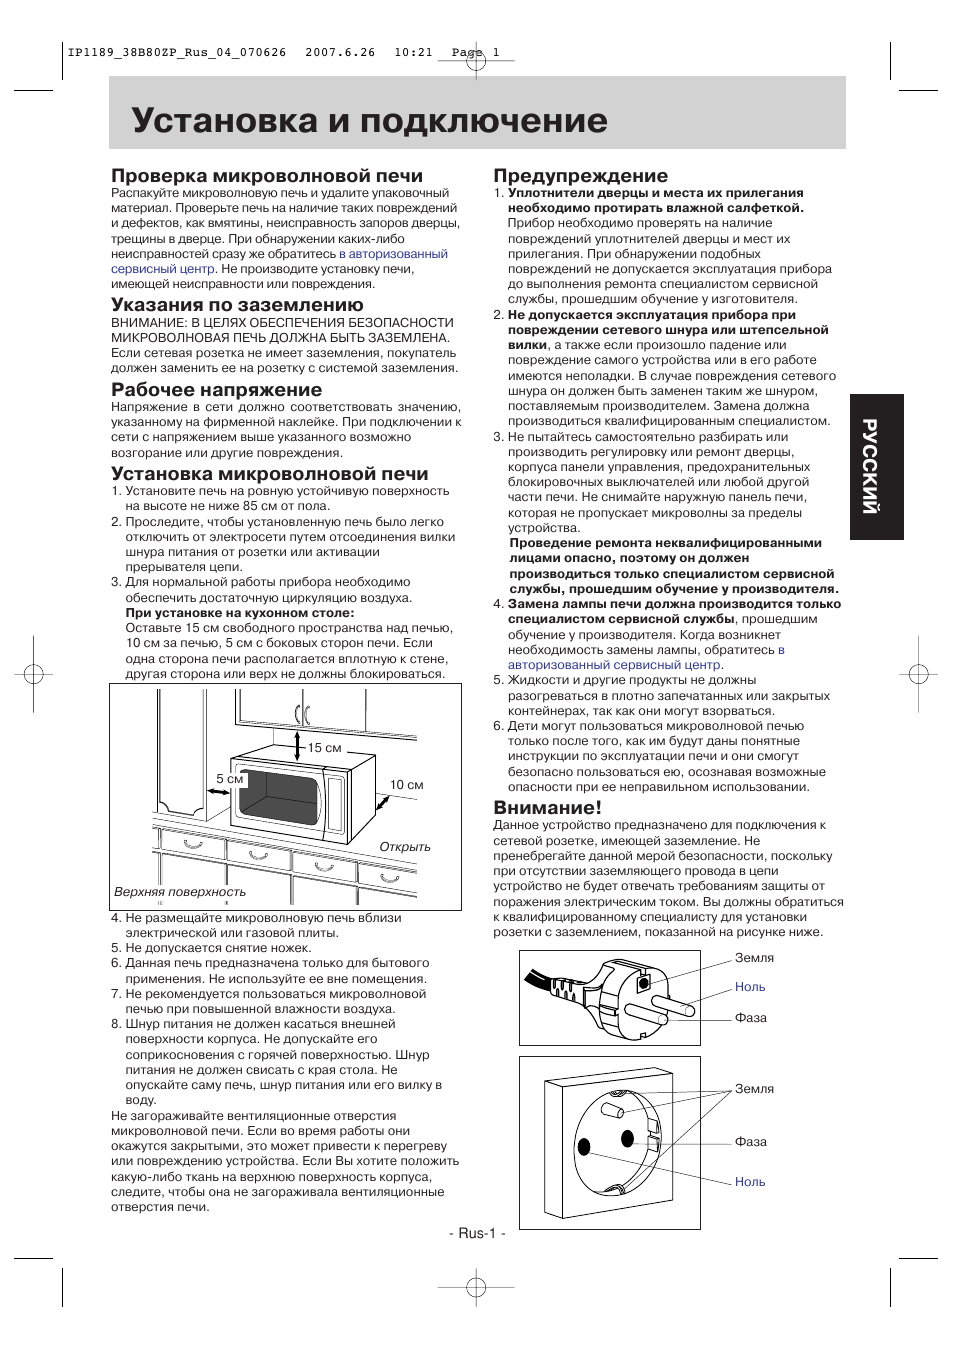 Микроволновая печь Панасоник nn-gd577m инструкция